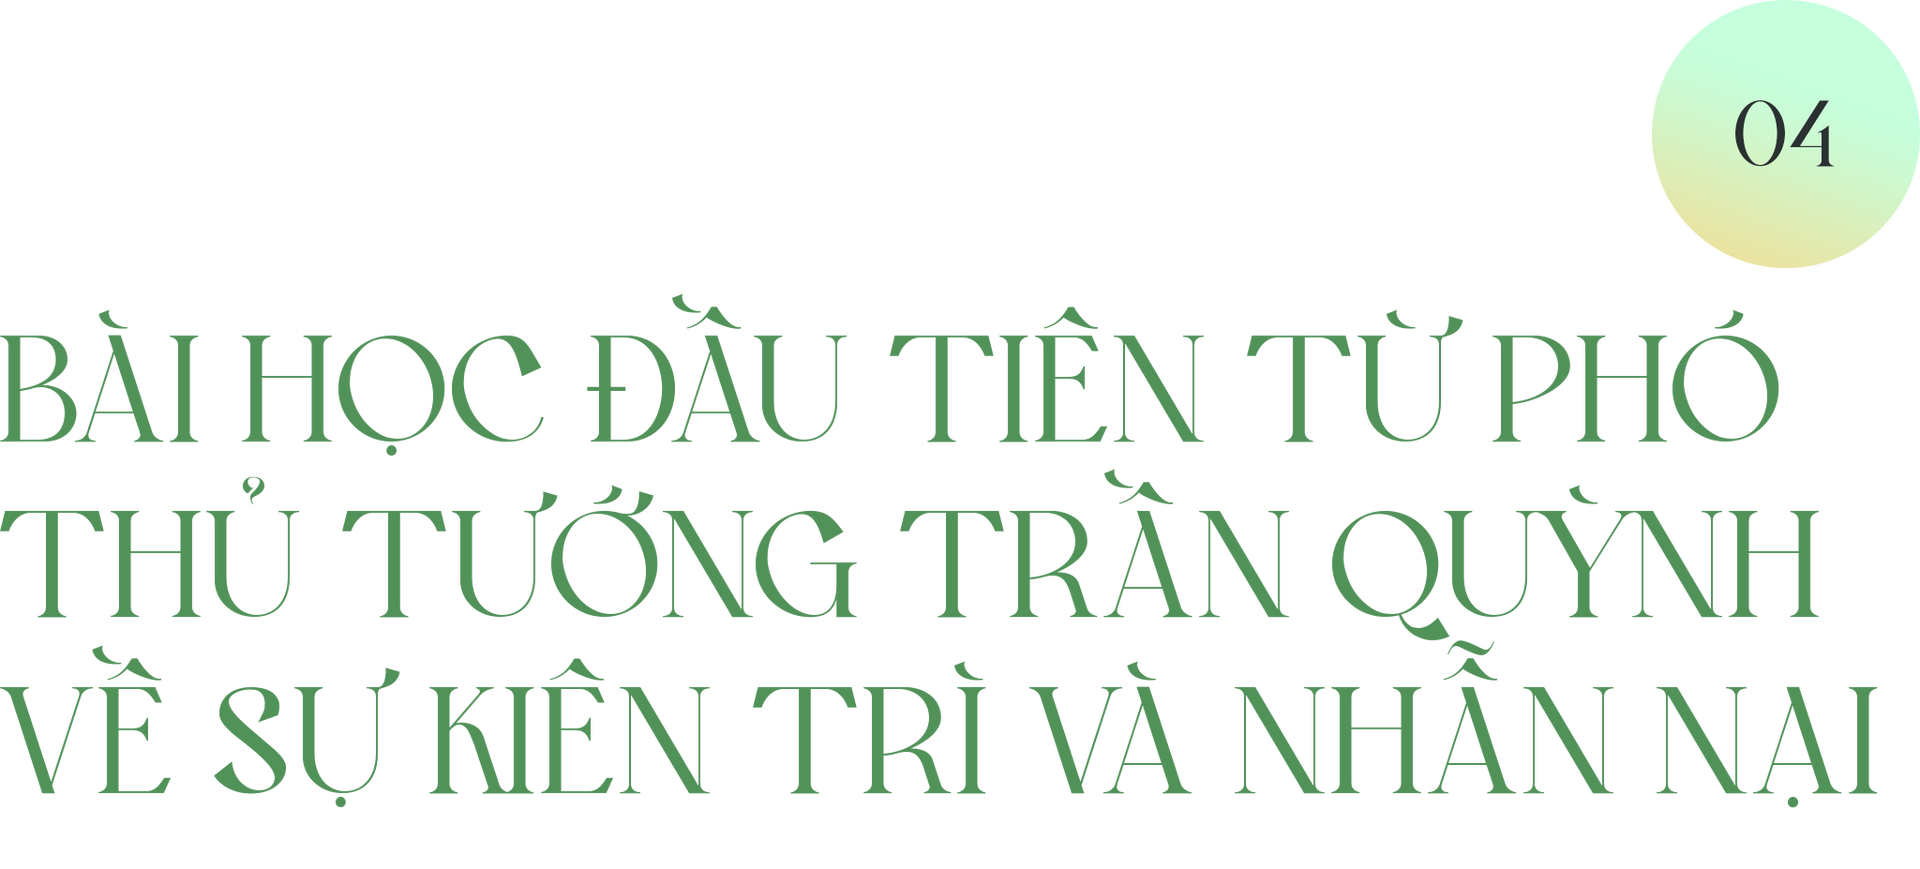 Người được chọn cho sứ mệnh mở đường đặc biệt của Chính phủ Việt Nam - 15